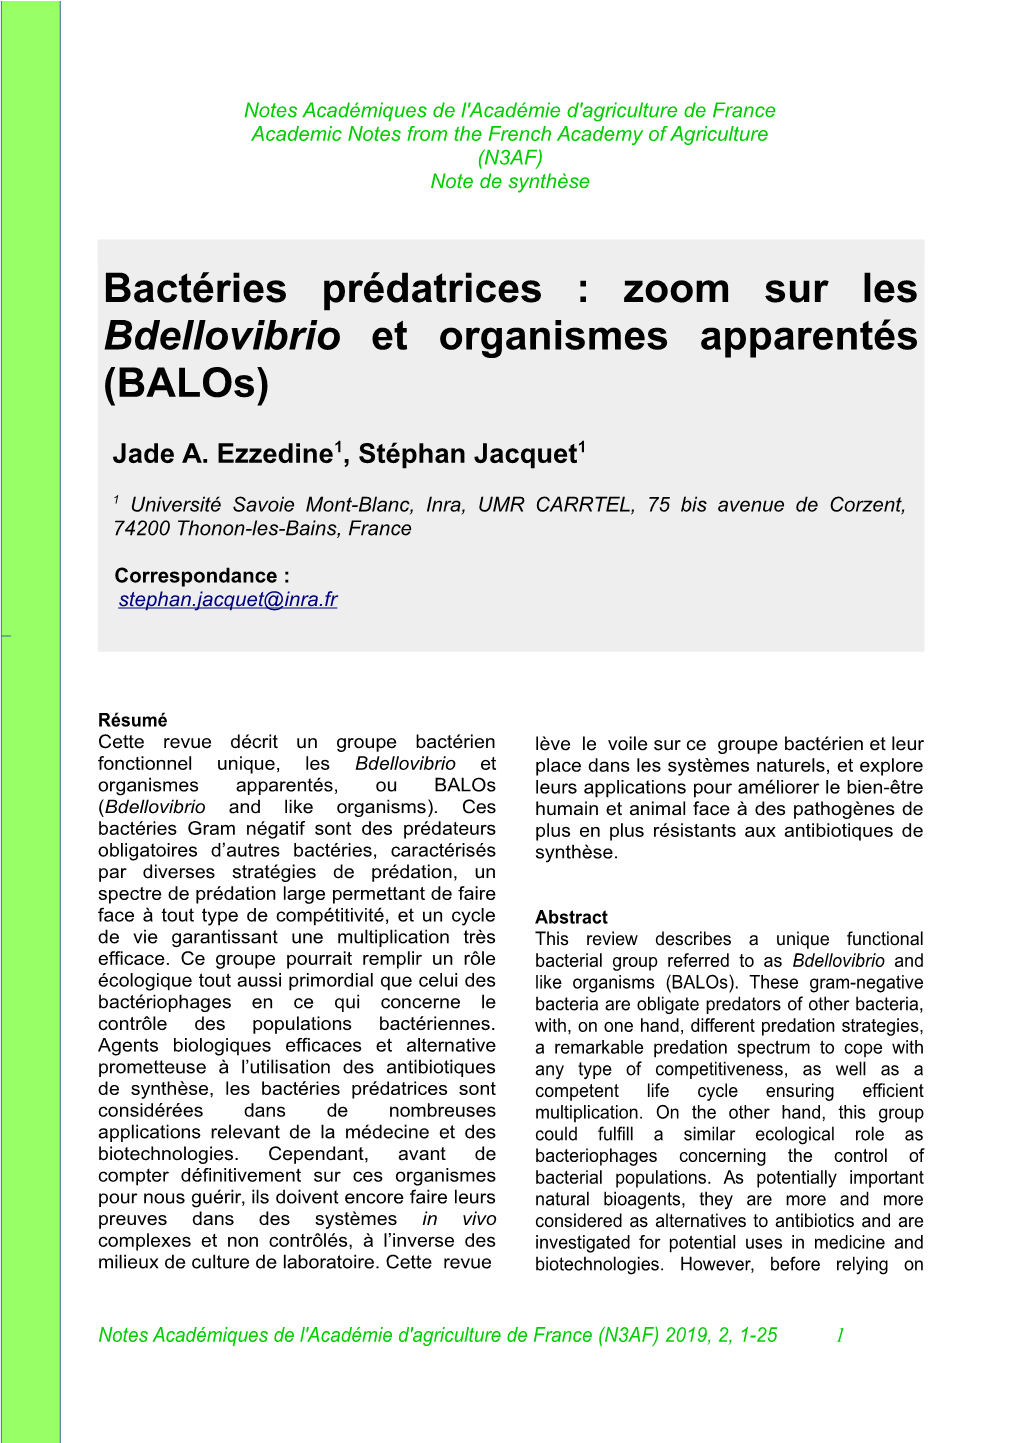 Zoom Sur Les Bdellovibrio Et Organismes Apparentés (Balos)